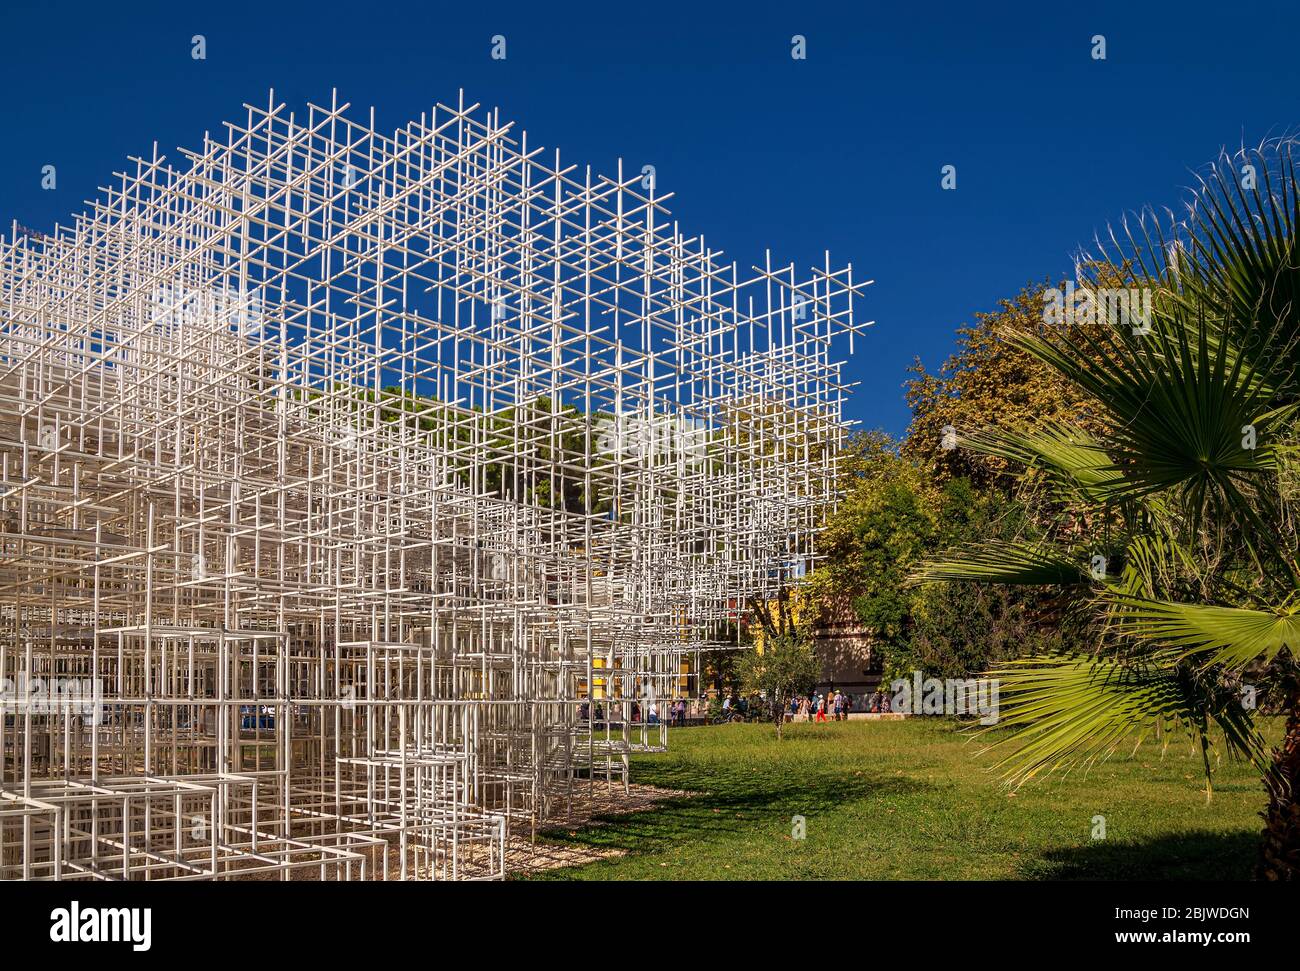 Installation objet d'art appelé "le nuage" dans le centre de Tirana, Albanie. Conçu par le célèbre architecte japonais Sou Fujimoto. Banque D'Images